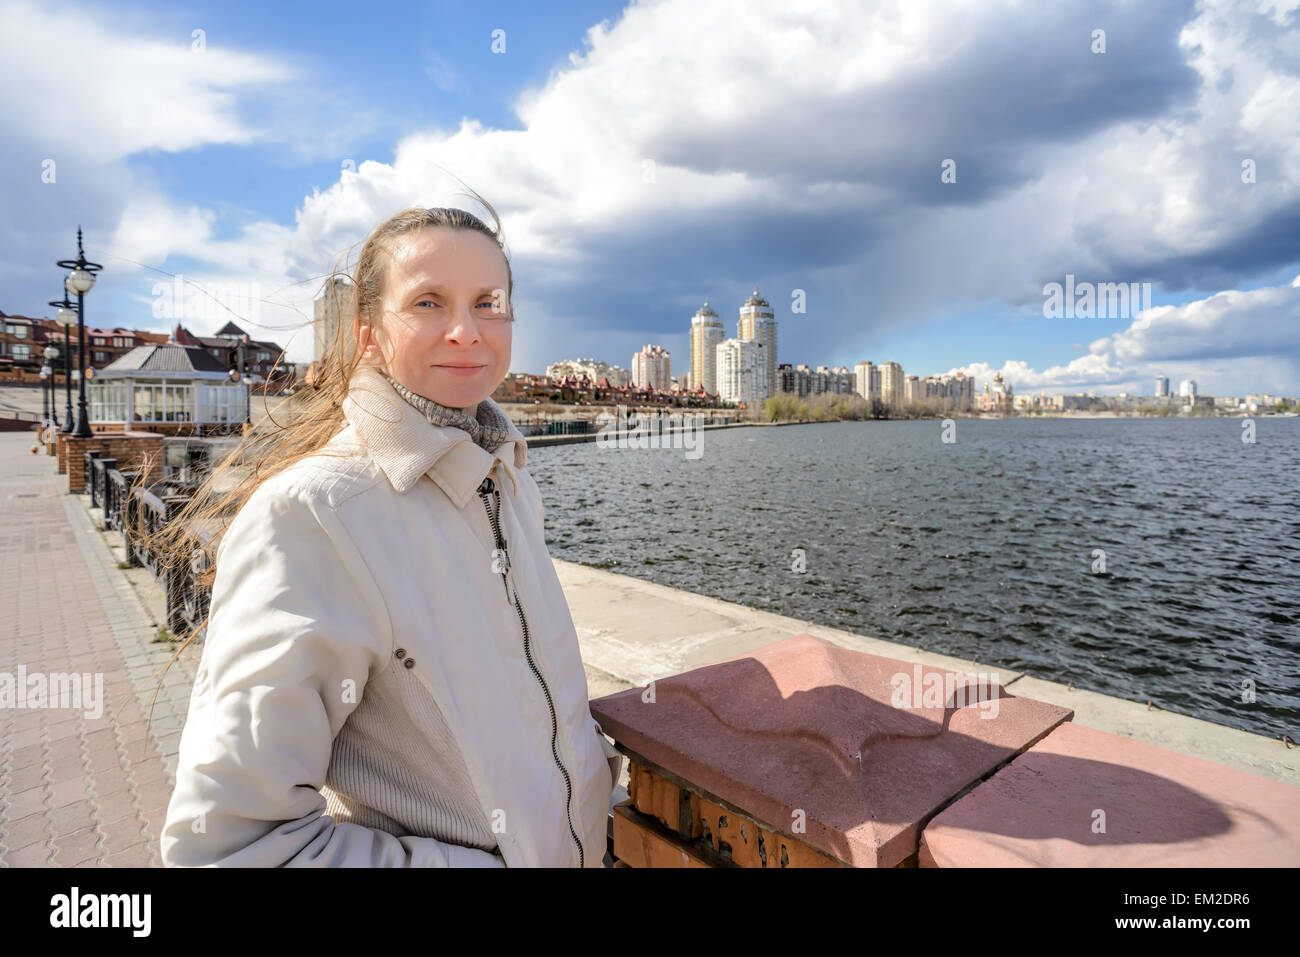 In der Nähe des Flusses steht eine lächelnde Frau, ihr Haar wird durch den Wind unter einem dramatischen stürmischen Frühlingshimmel verschoben Stockfoto